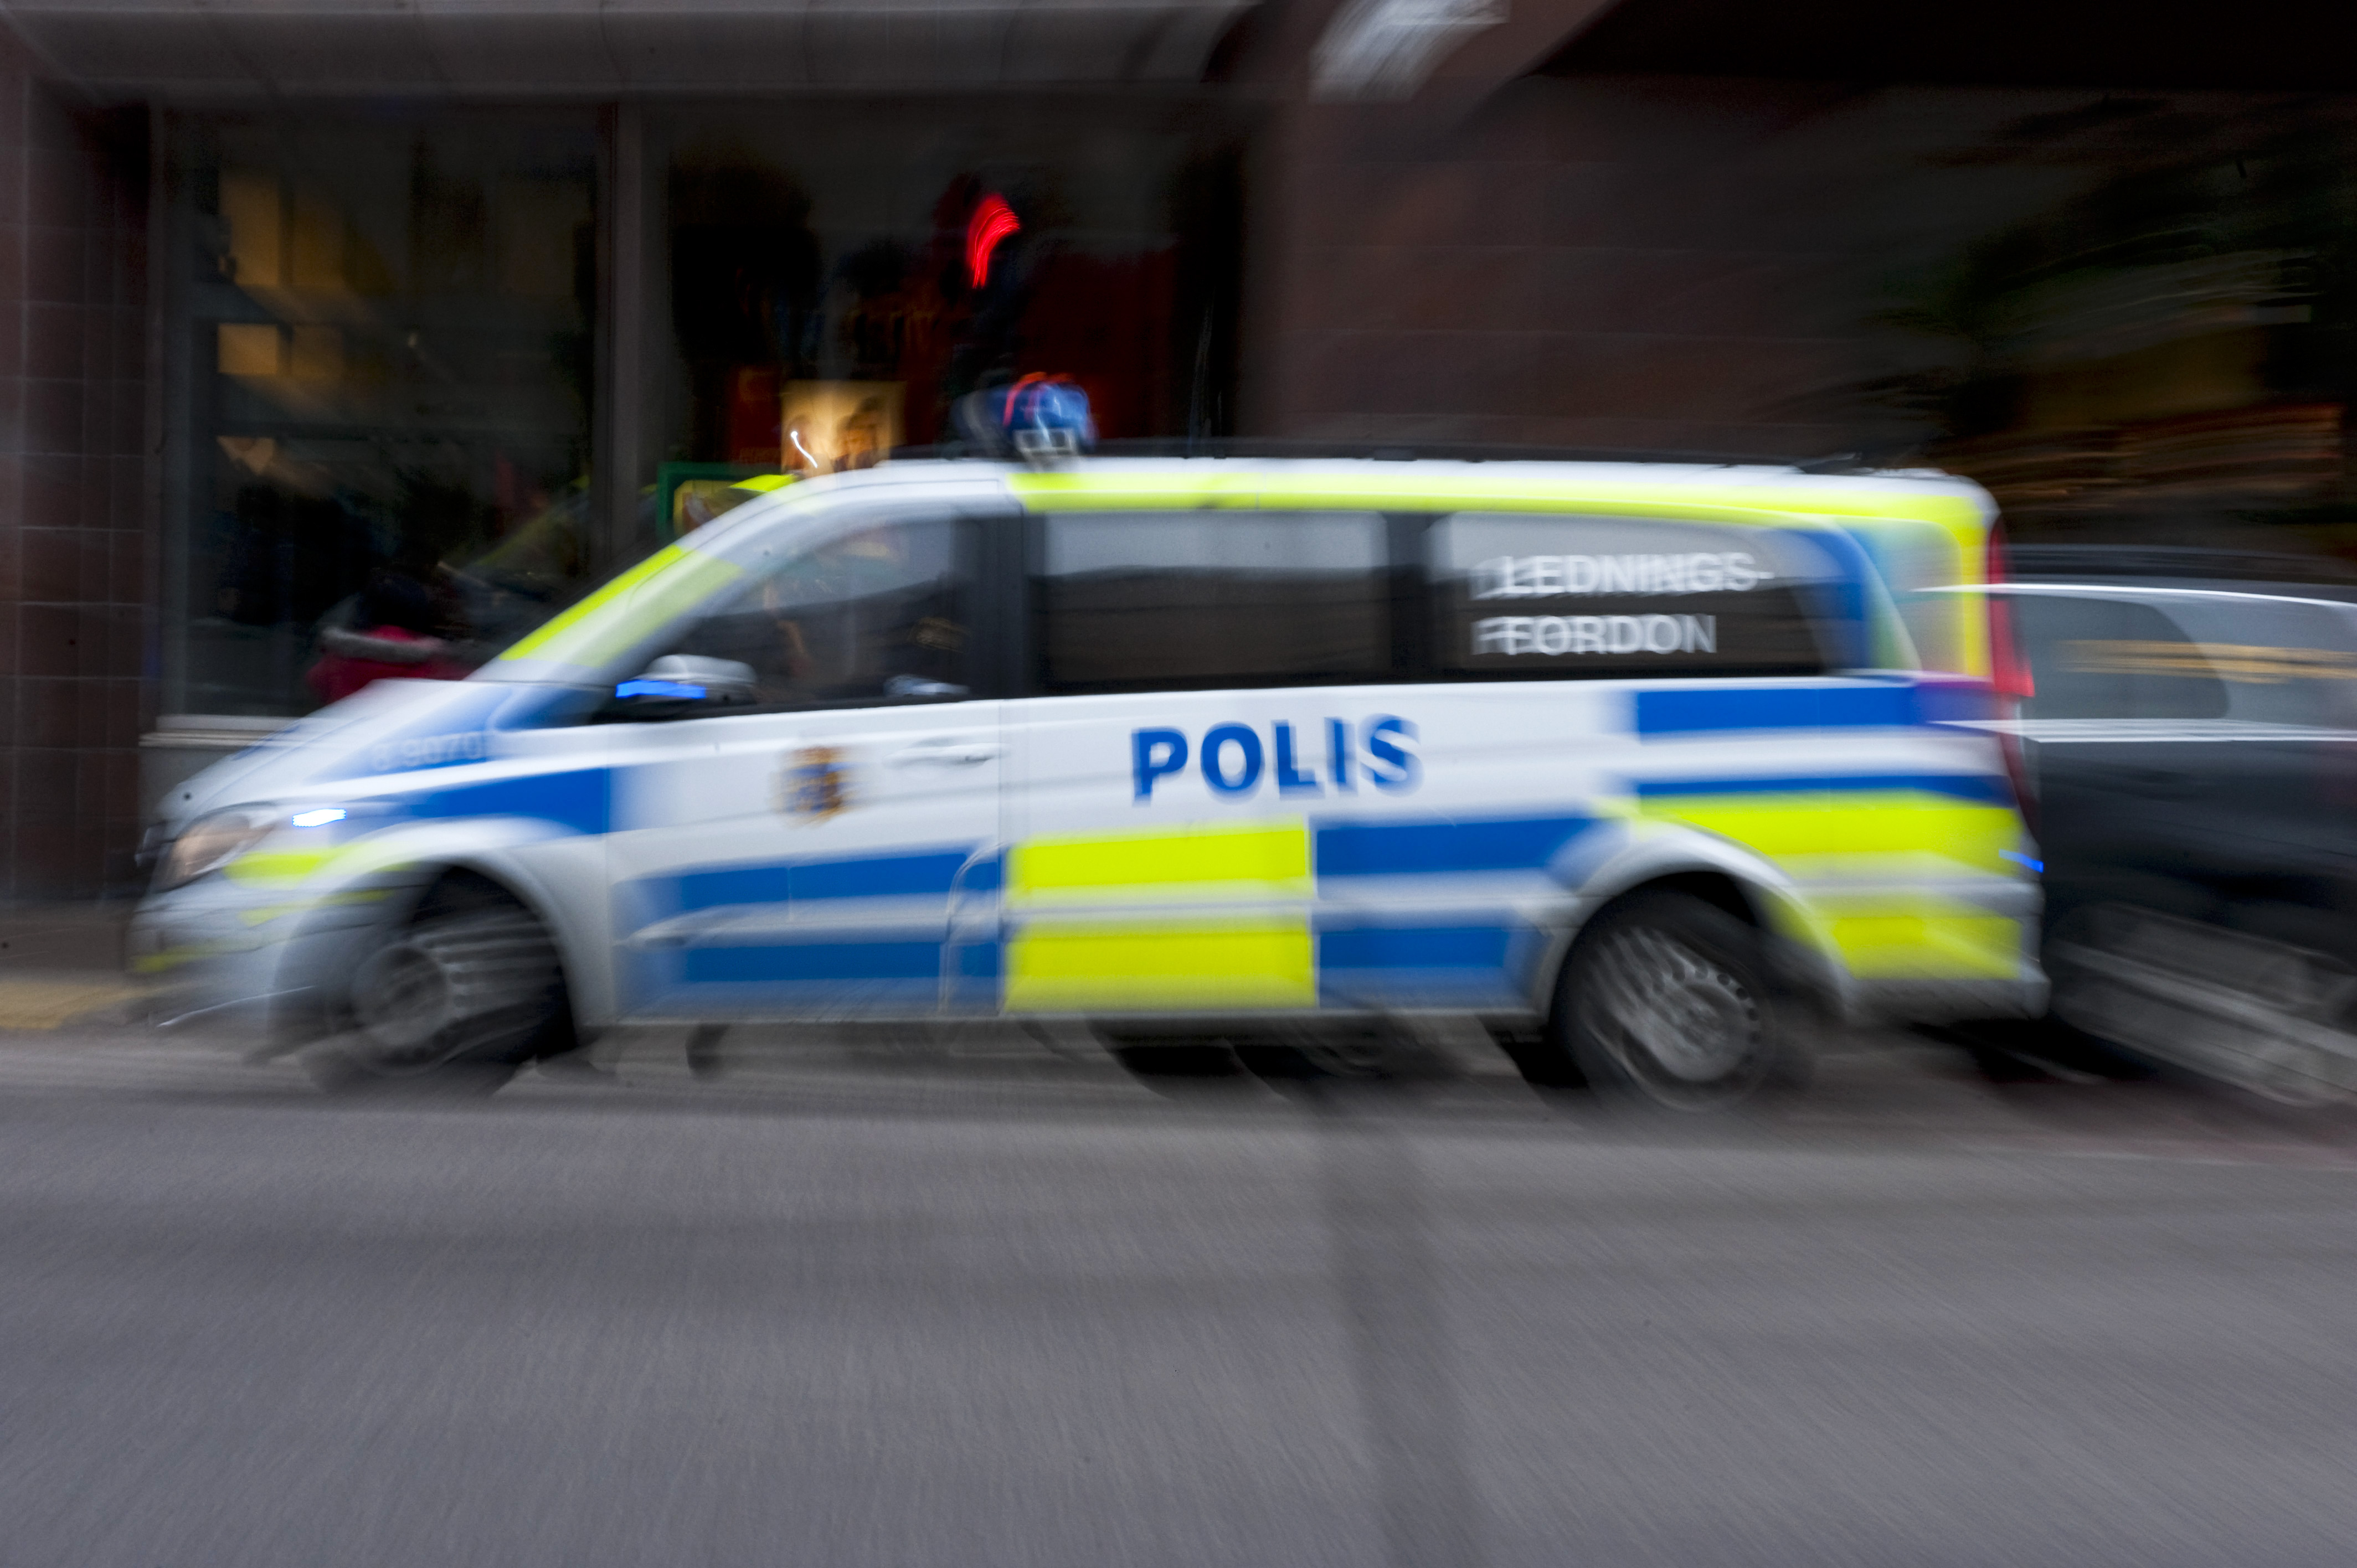 En man jagas av polis efter ett misstänkt våldtäktsförsök i Kista i norra Stockholm, skriver polisen på sin hemsida.